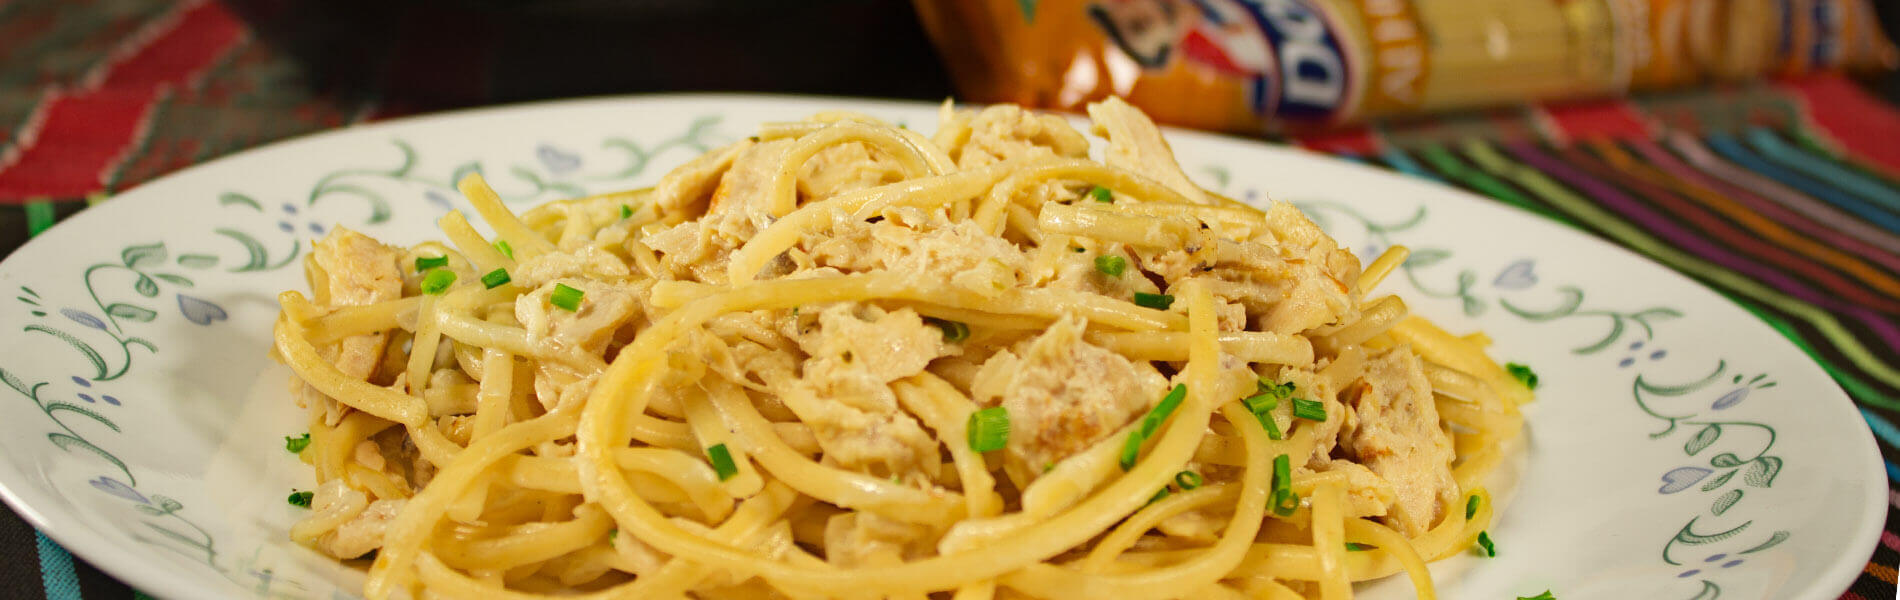 Spaghetti Huevo Doria con Pescado Blanco